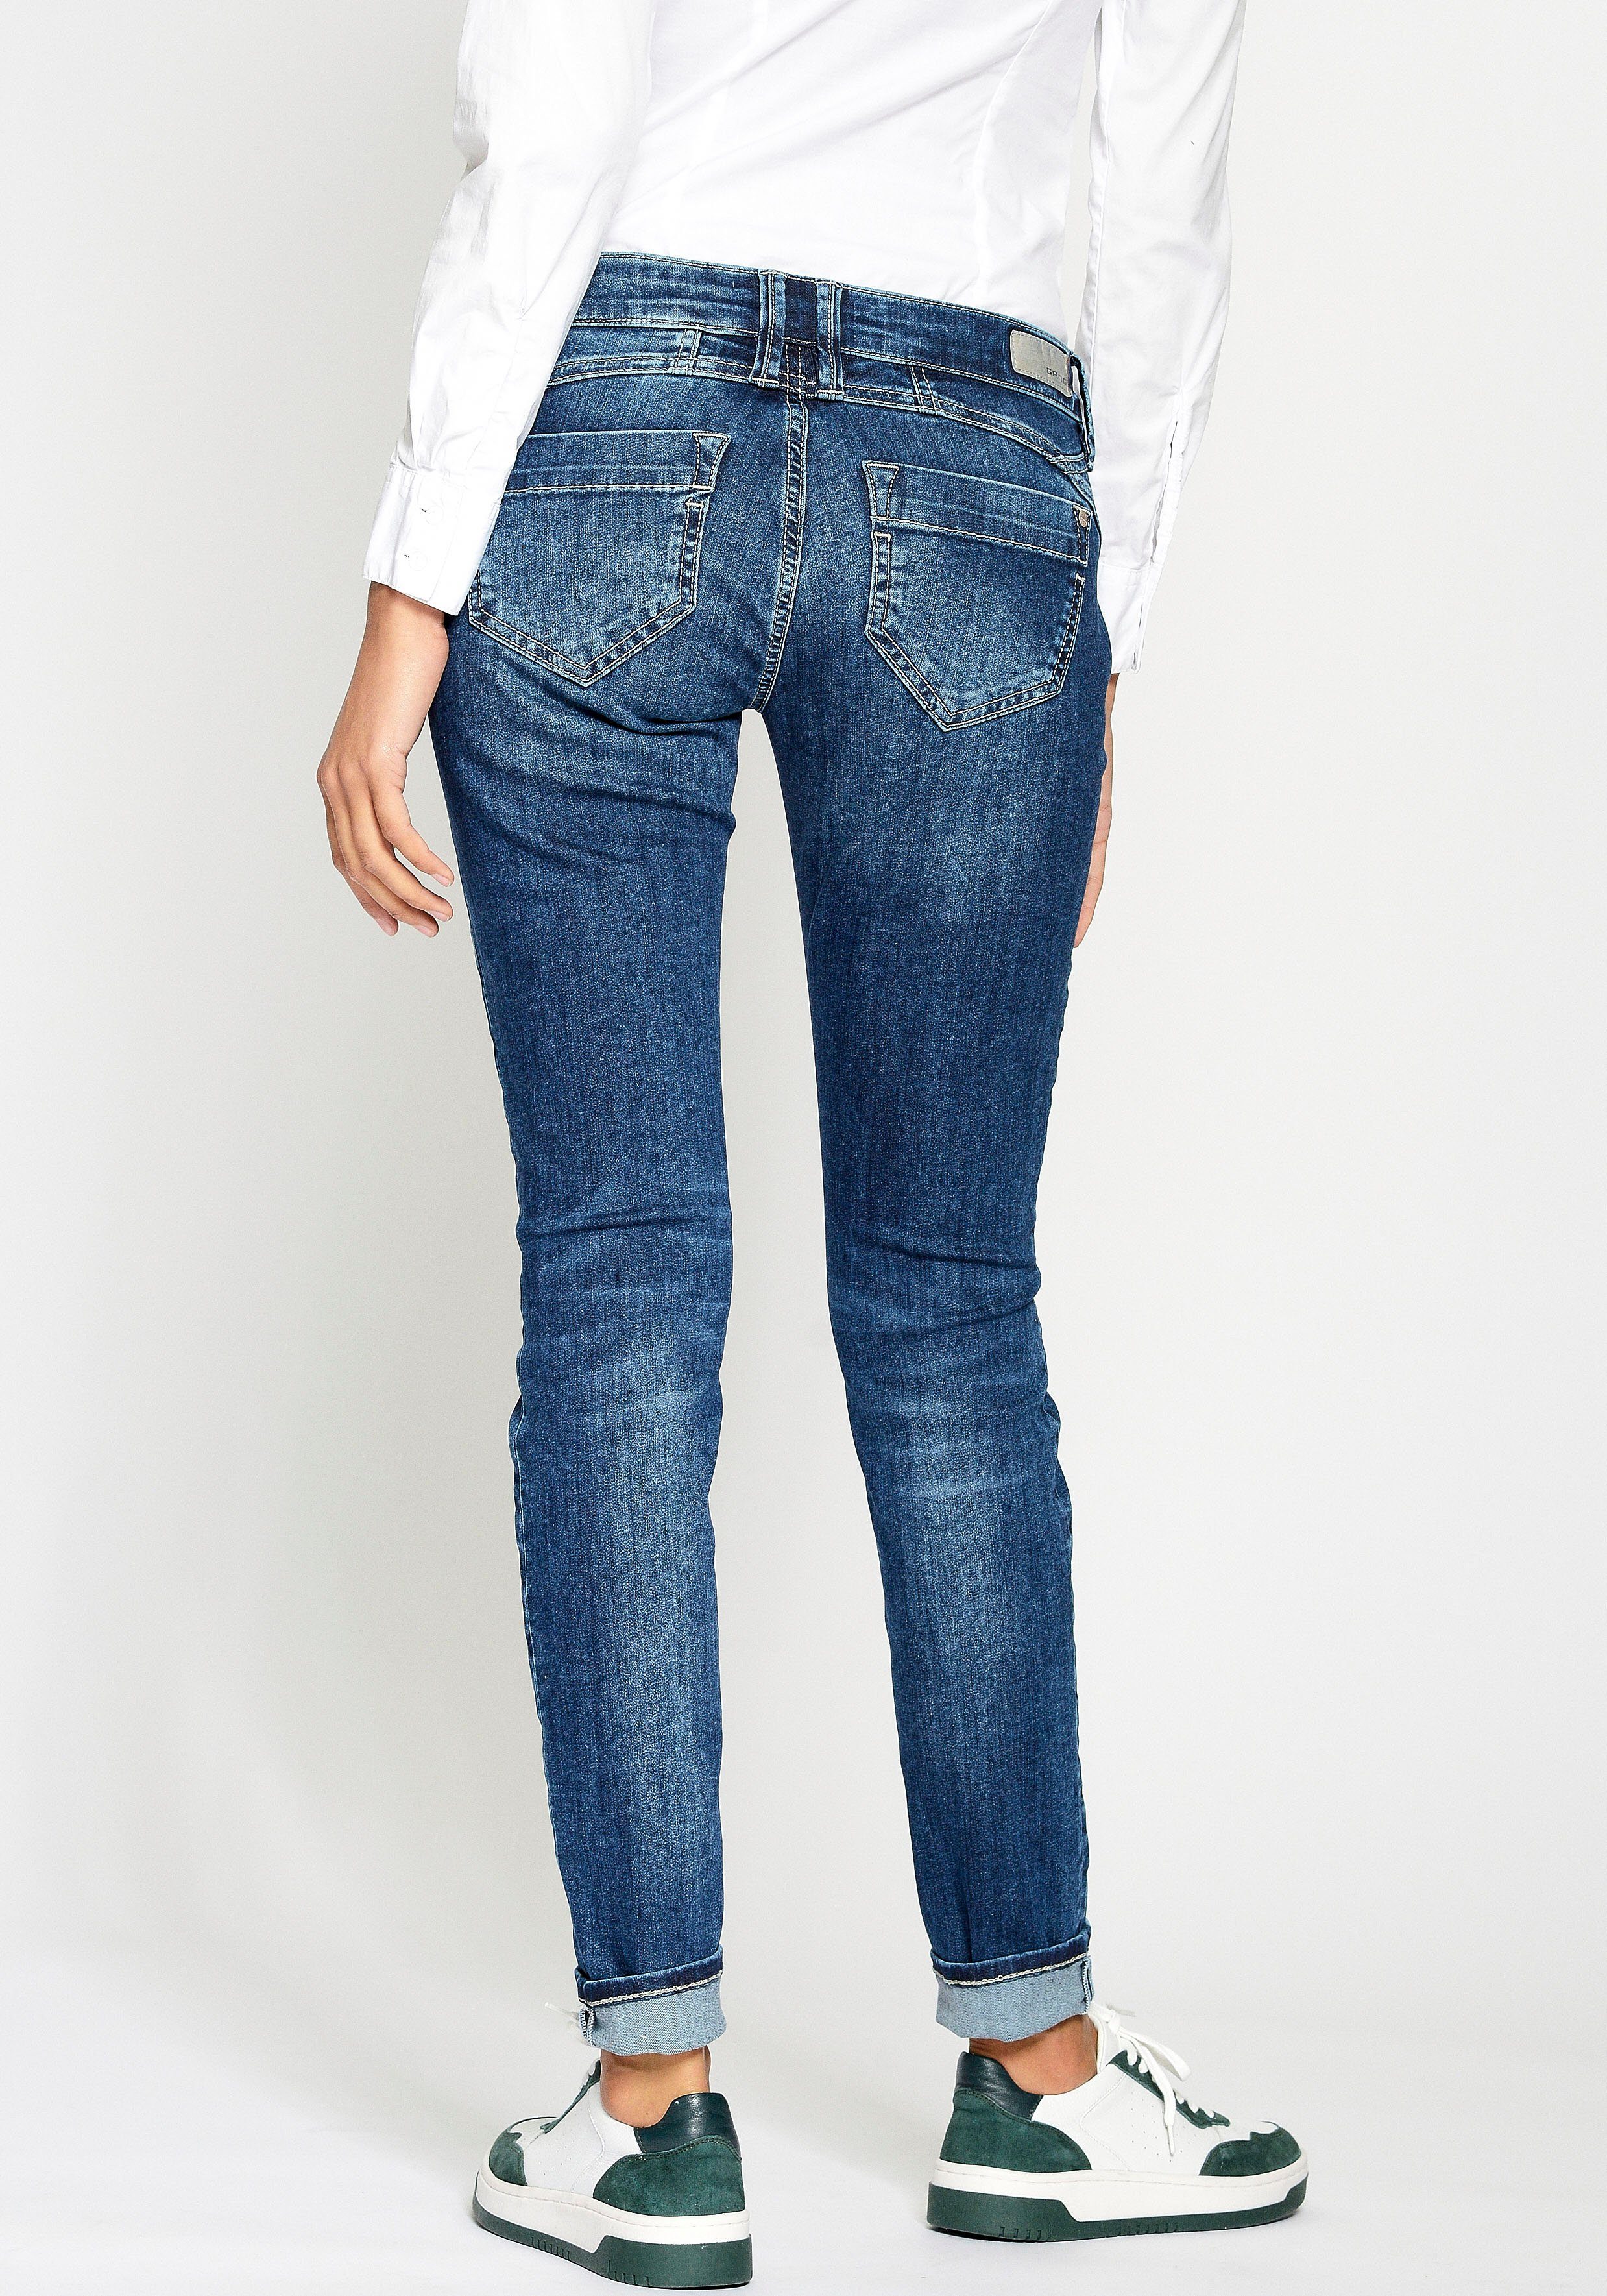 GANG Skinny-fit-Jeans 94Nena in authenischer Used-Waschung, Mit gekreuzten  Gürtelschlaufen links vorne